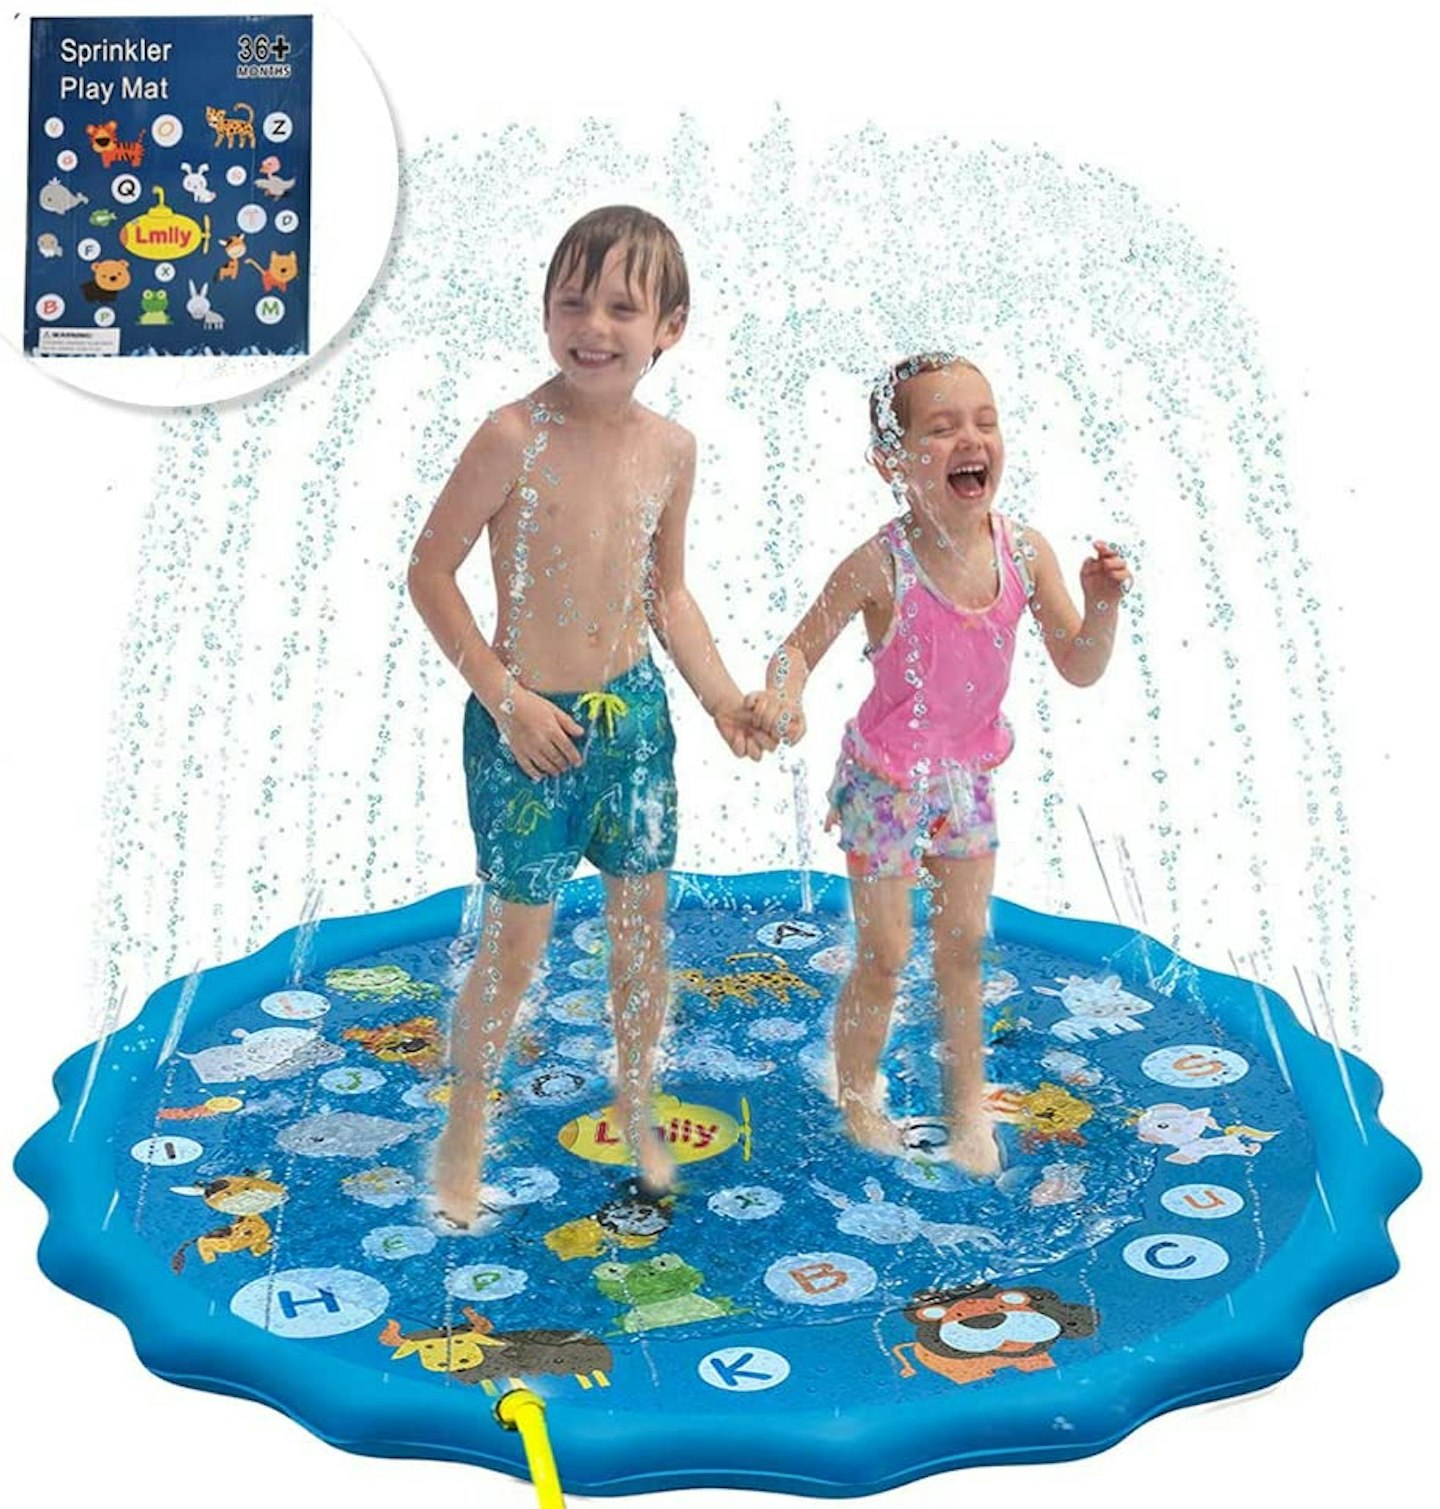 Lmlly Sprinkler Pad for Kids